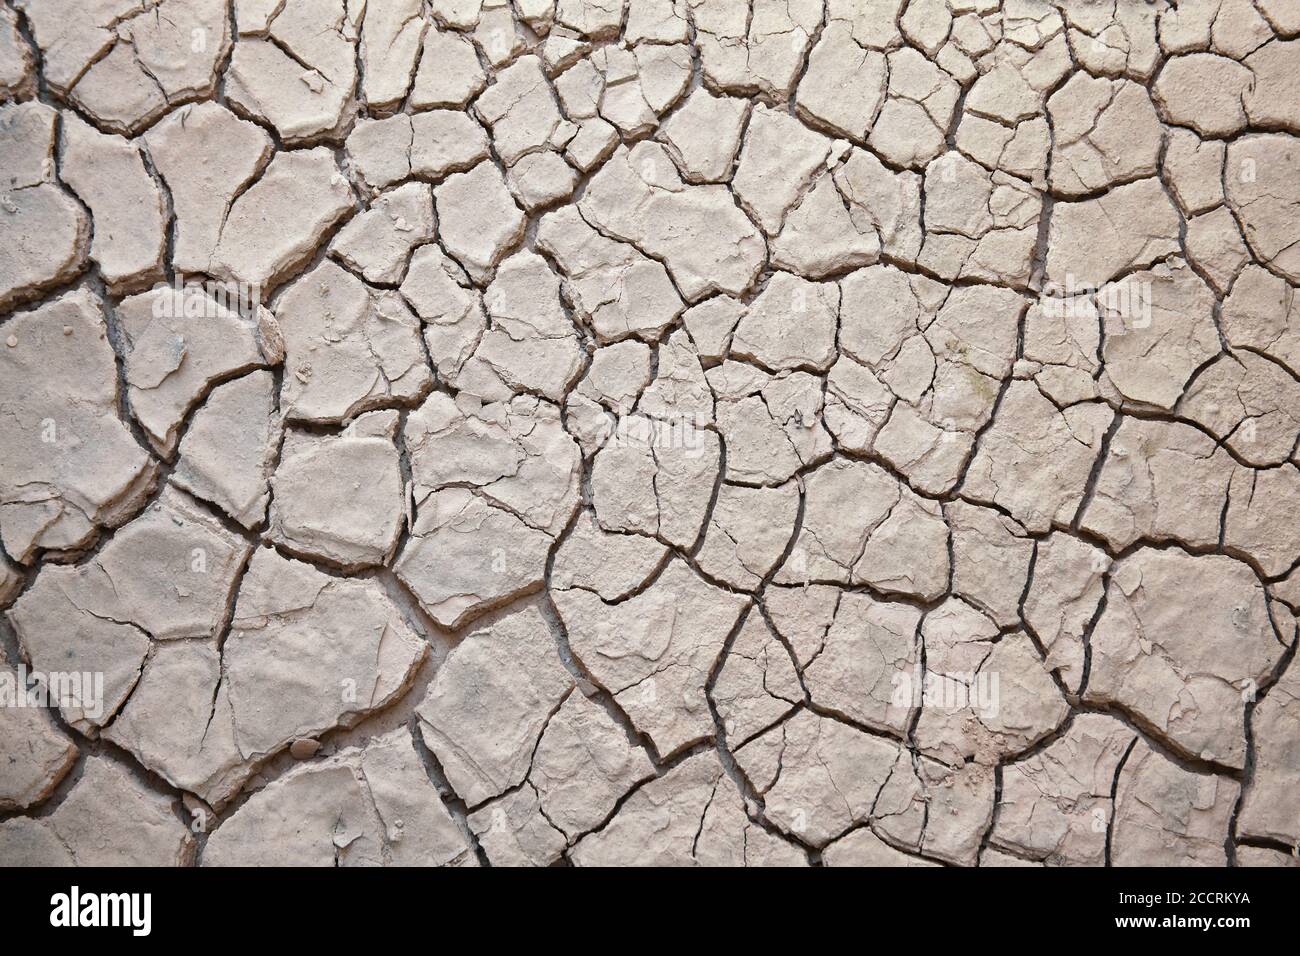 Texture de fond de la boue fendue craquée terre de terre causée par photo de stock de sécheresse d'été Banque D'Images